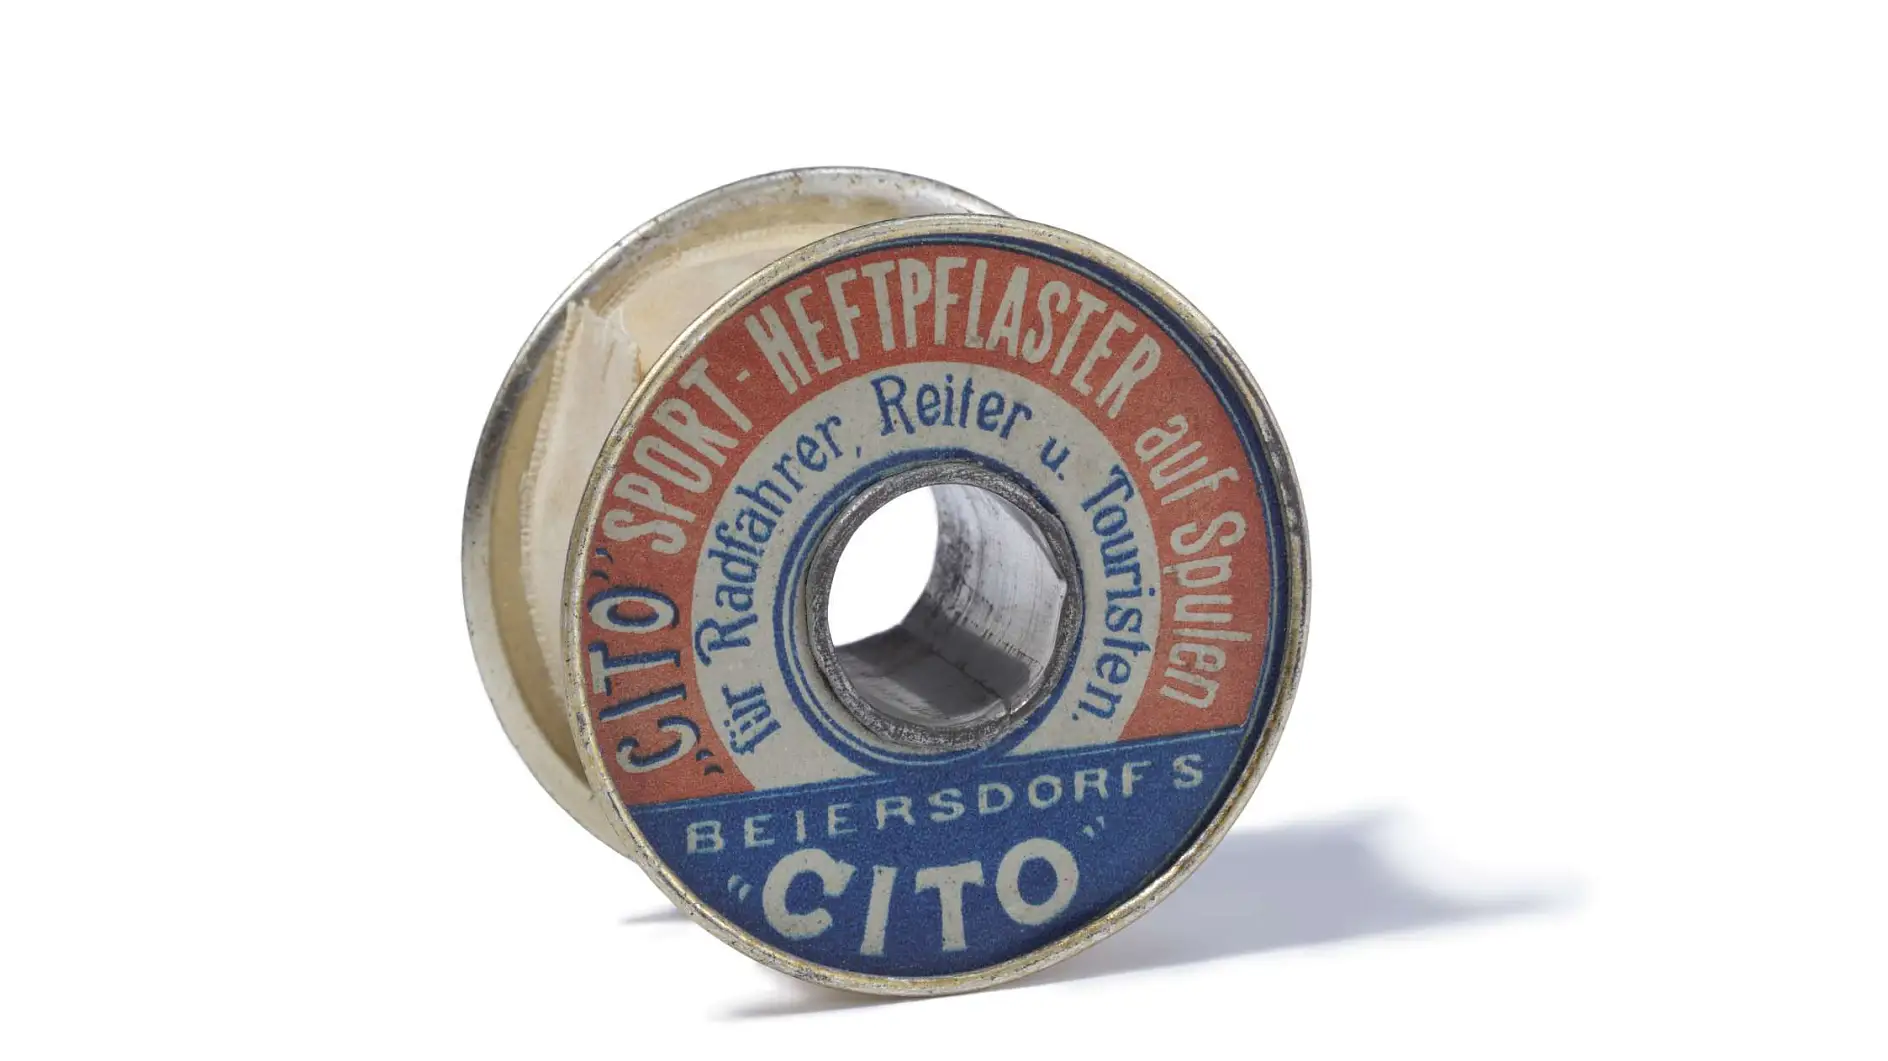 Cito sportstape fra 1896 er verdens første tekniske tape.